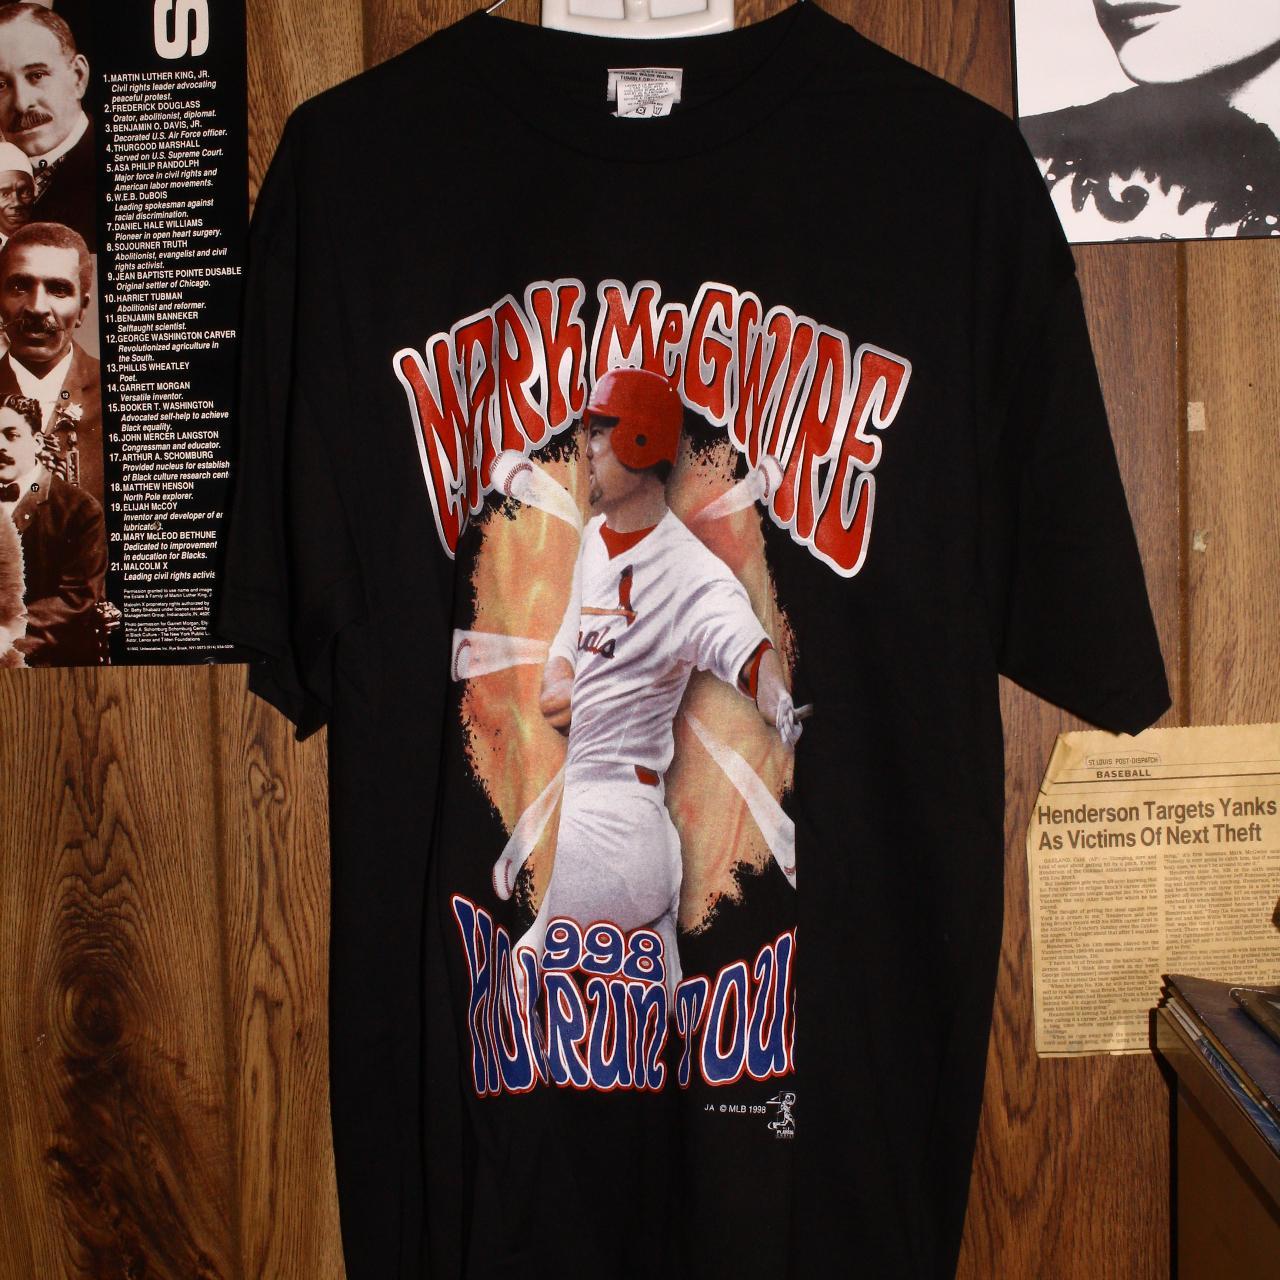 Mark Mcgwire 1998 Home Run Tour Shirt Sz XL NWT